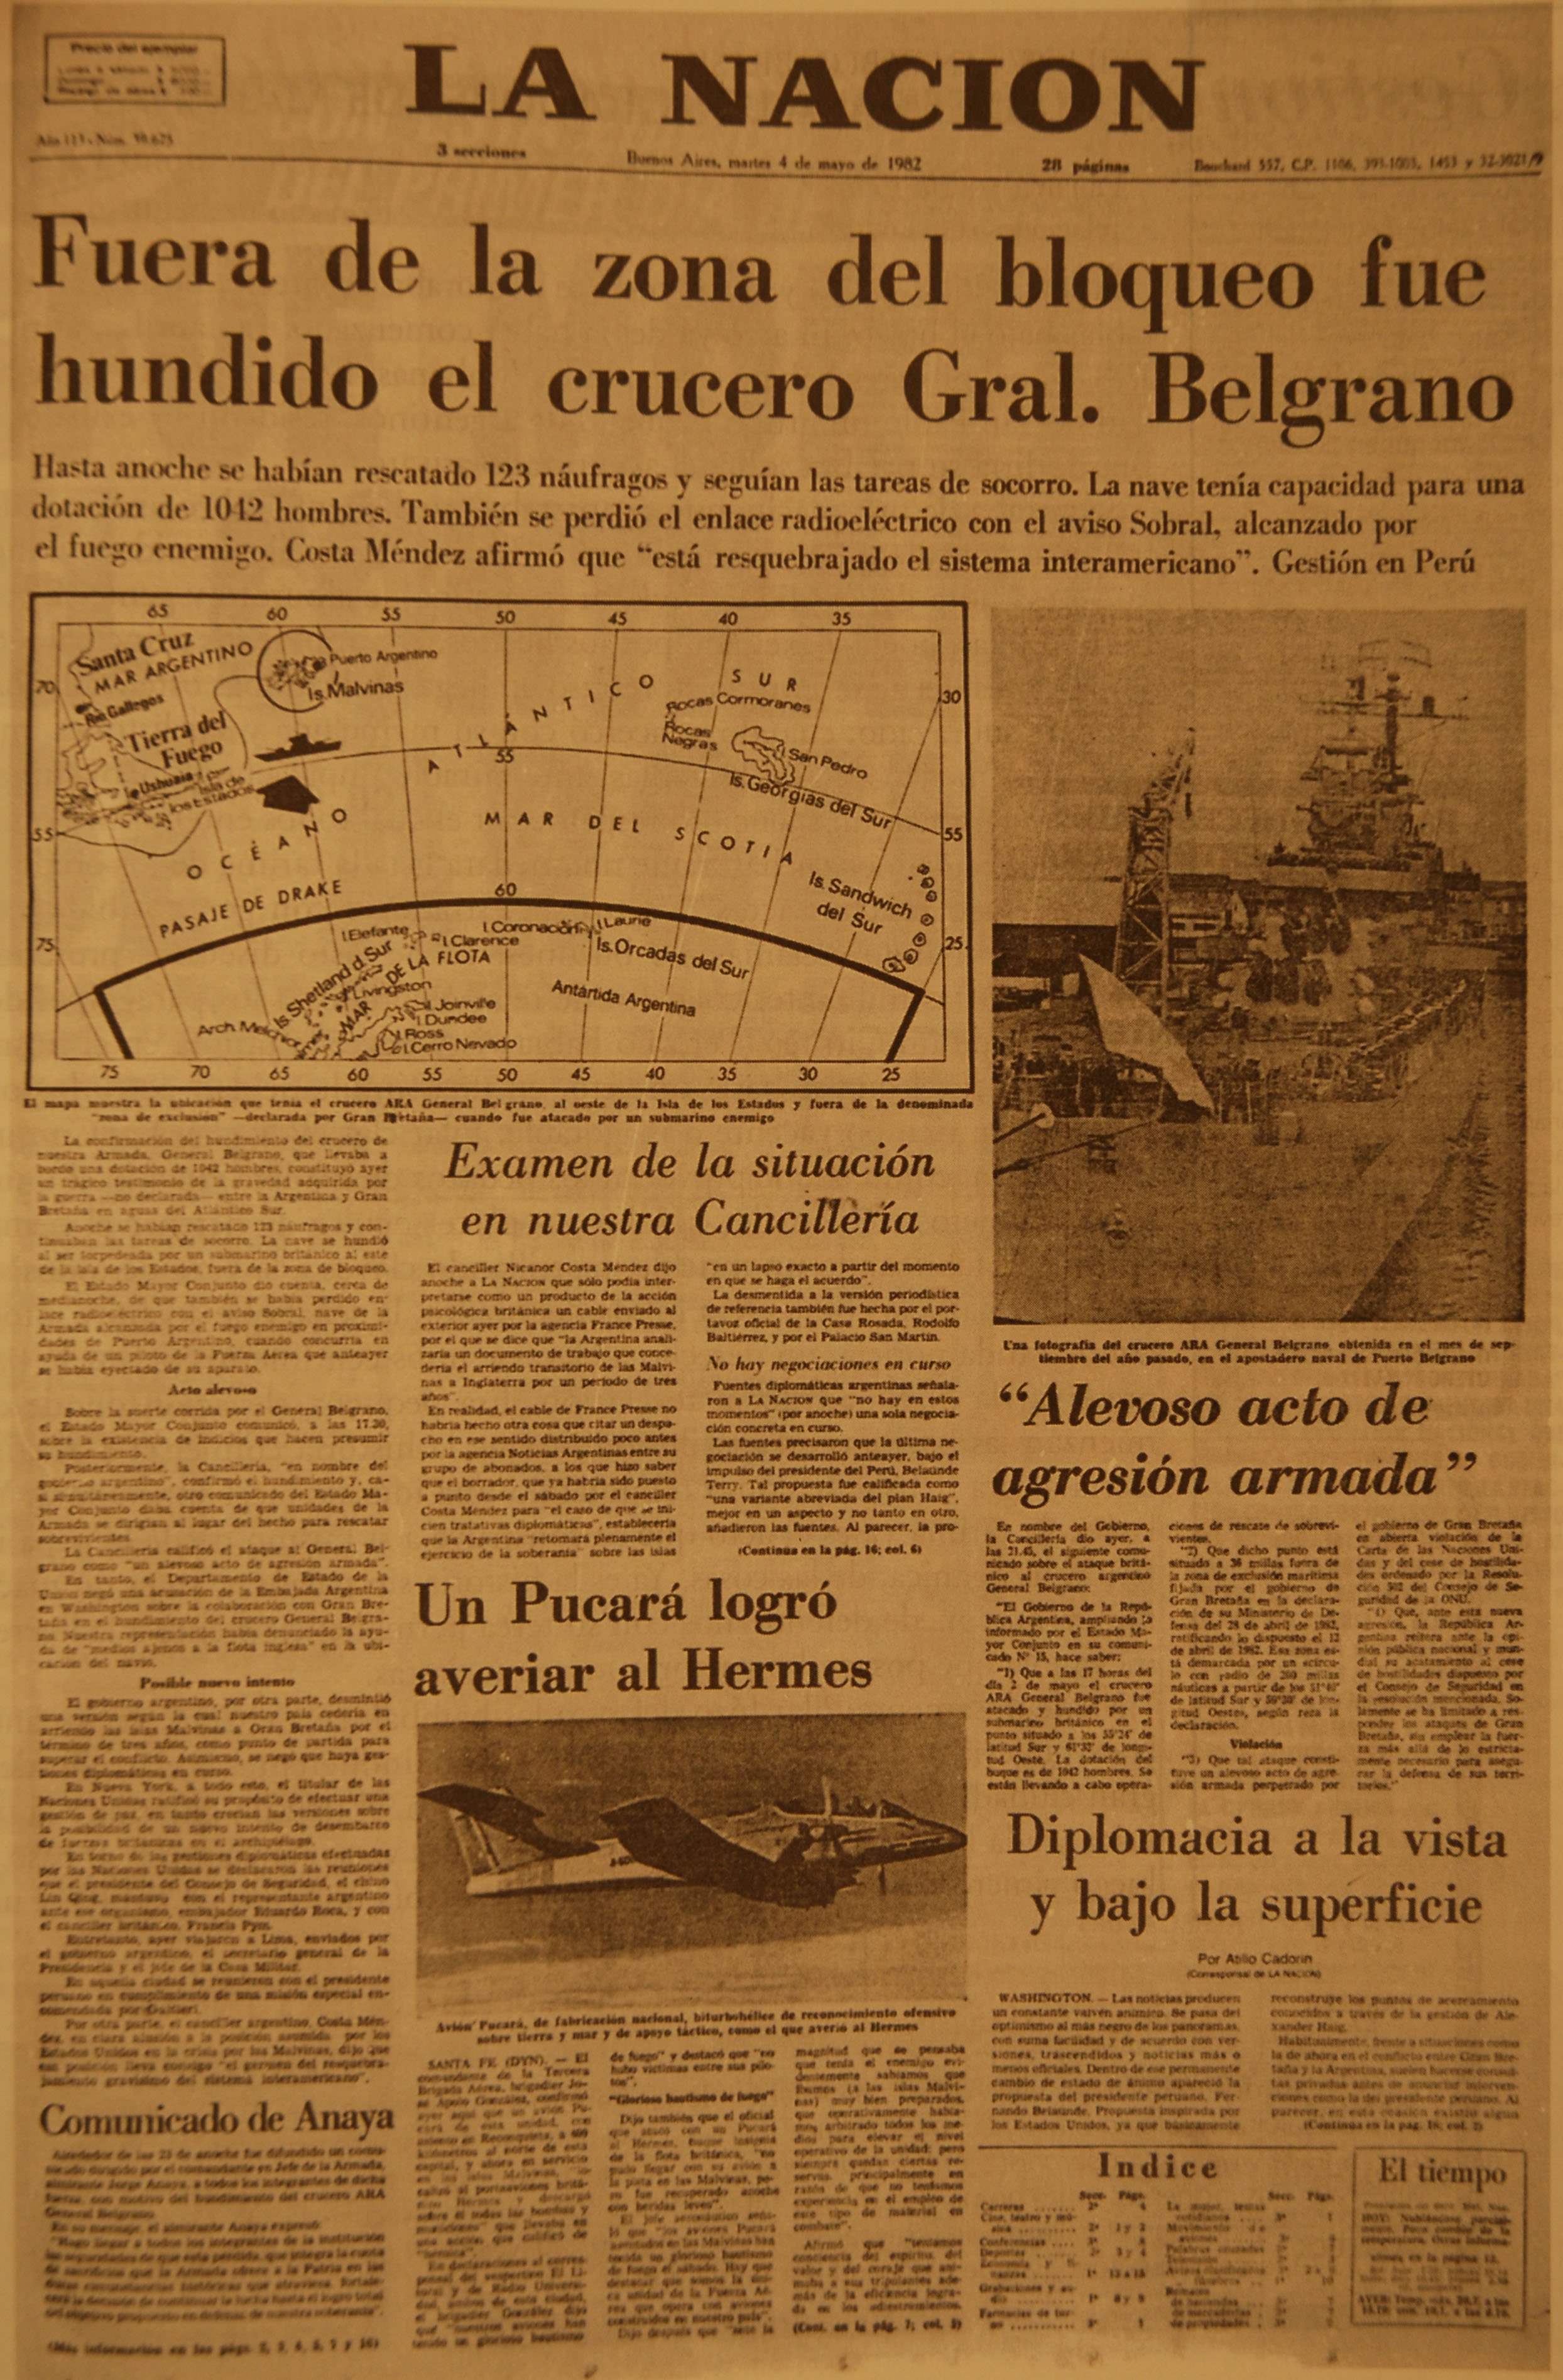 La Nación: Hundido el crucero General Belgrano